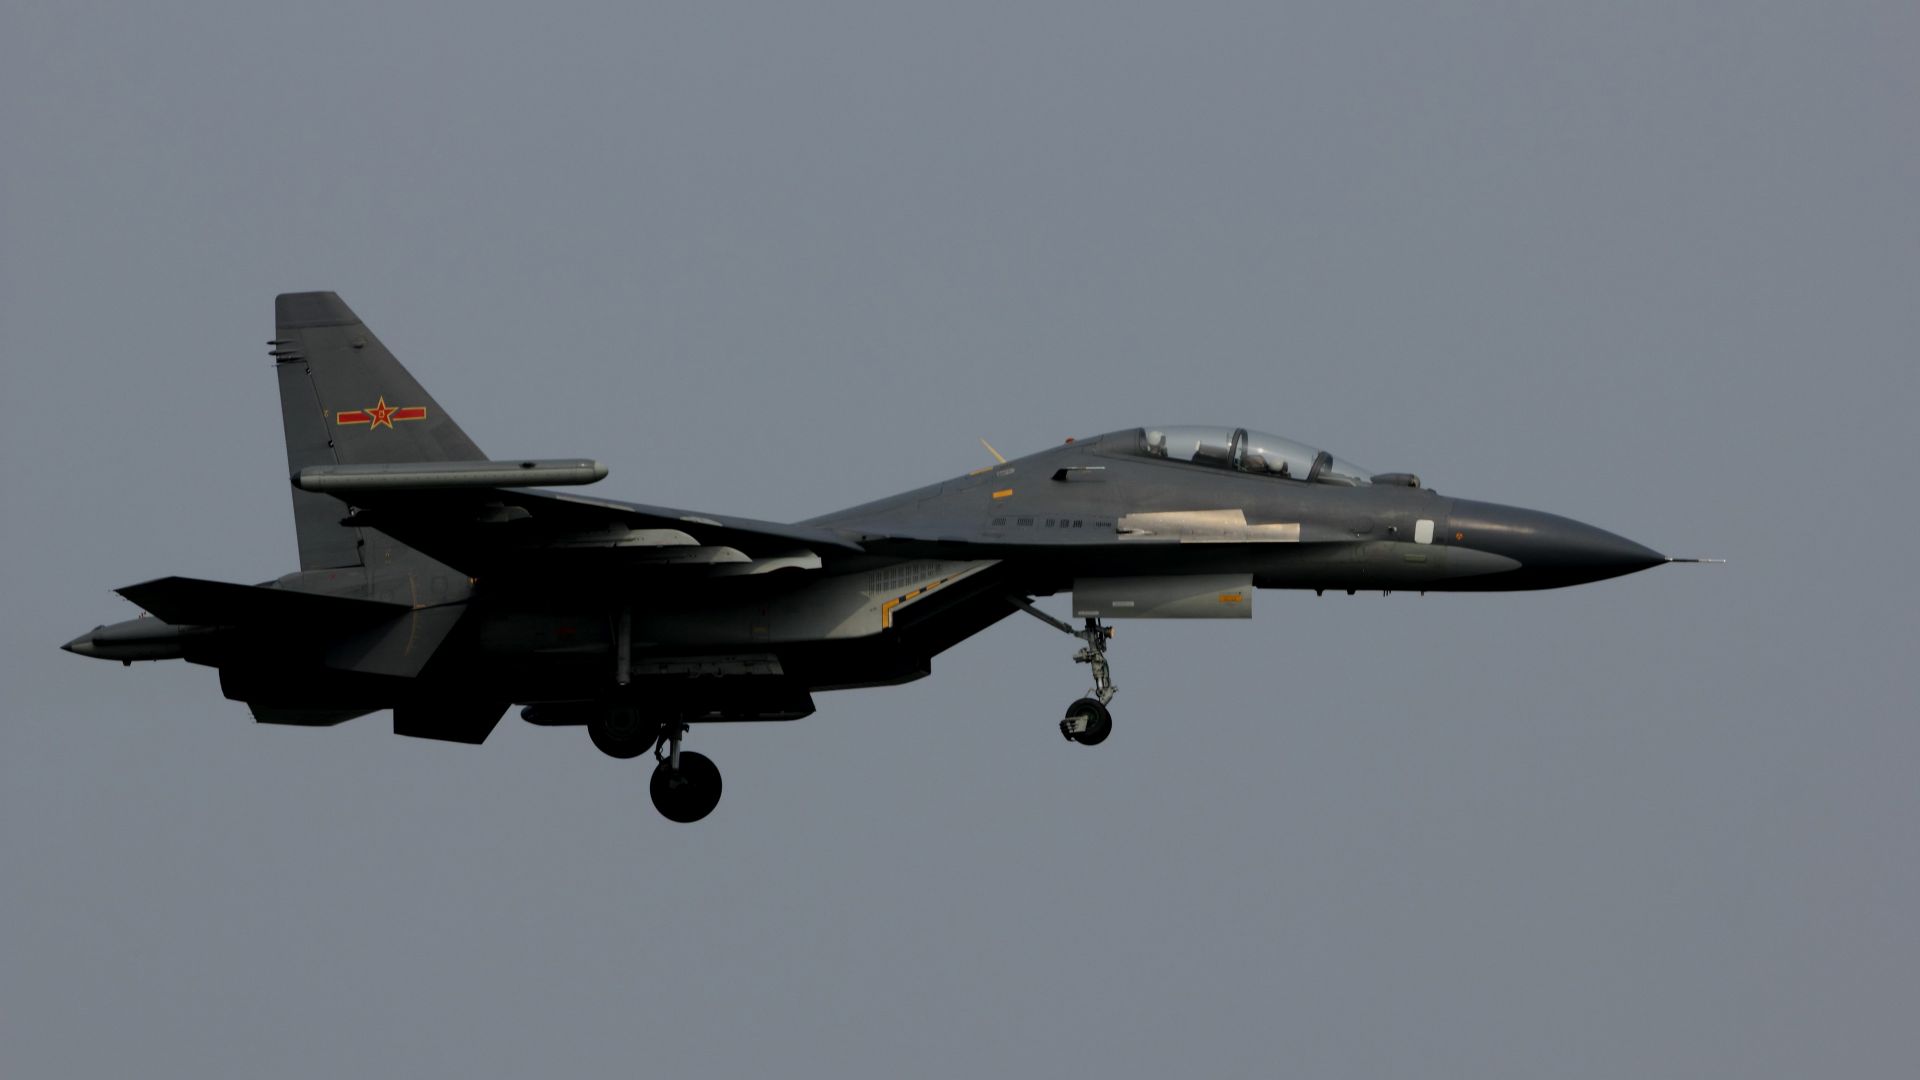 Шенянг Г-11, КНР армия, боевой самолет, Кнр, Shenyang J-11, China army, fighter aircraft, air force, China (horizontal)